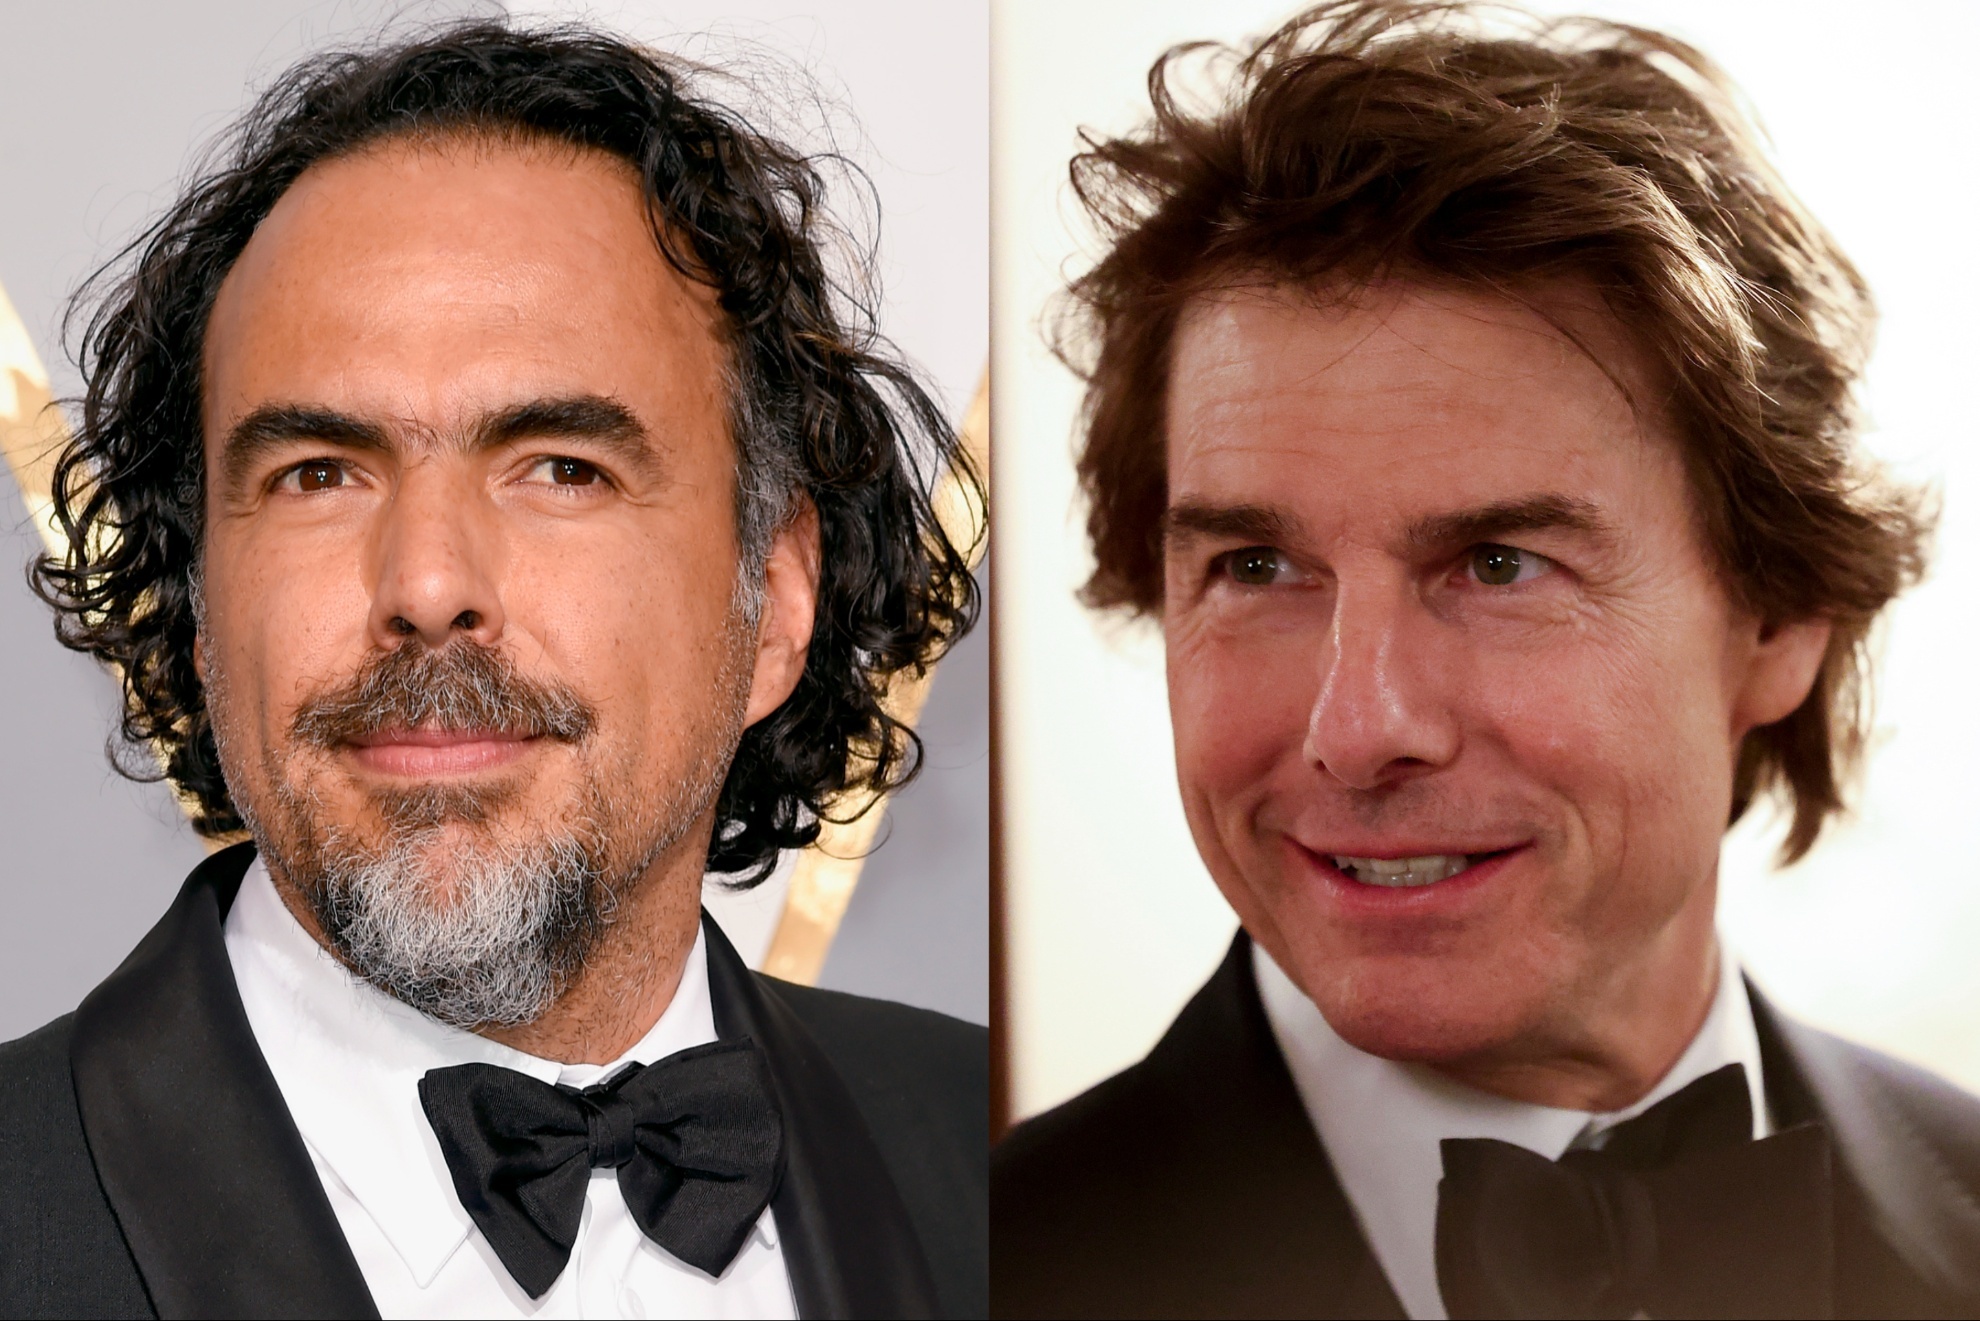 Oscar winner Alejandro G. Iñárritu and superstar Tom Cruise.